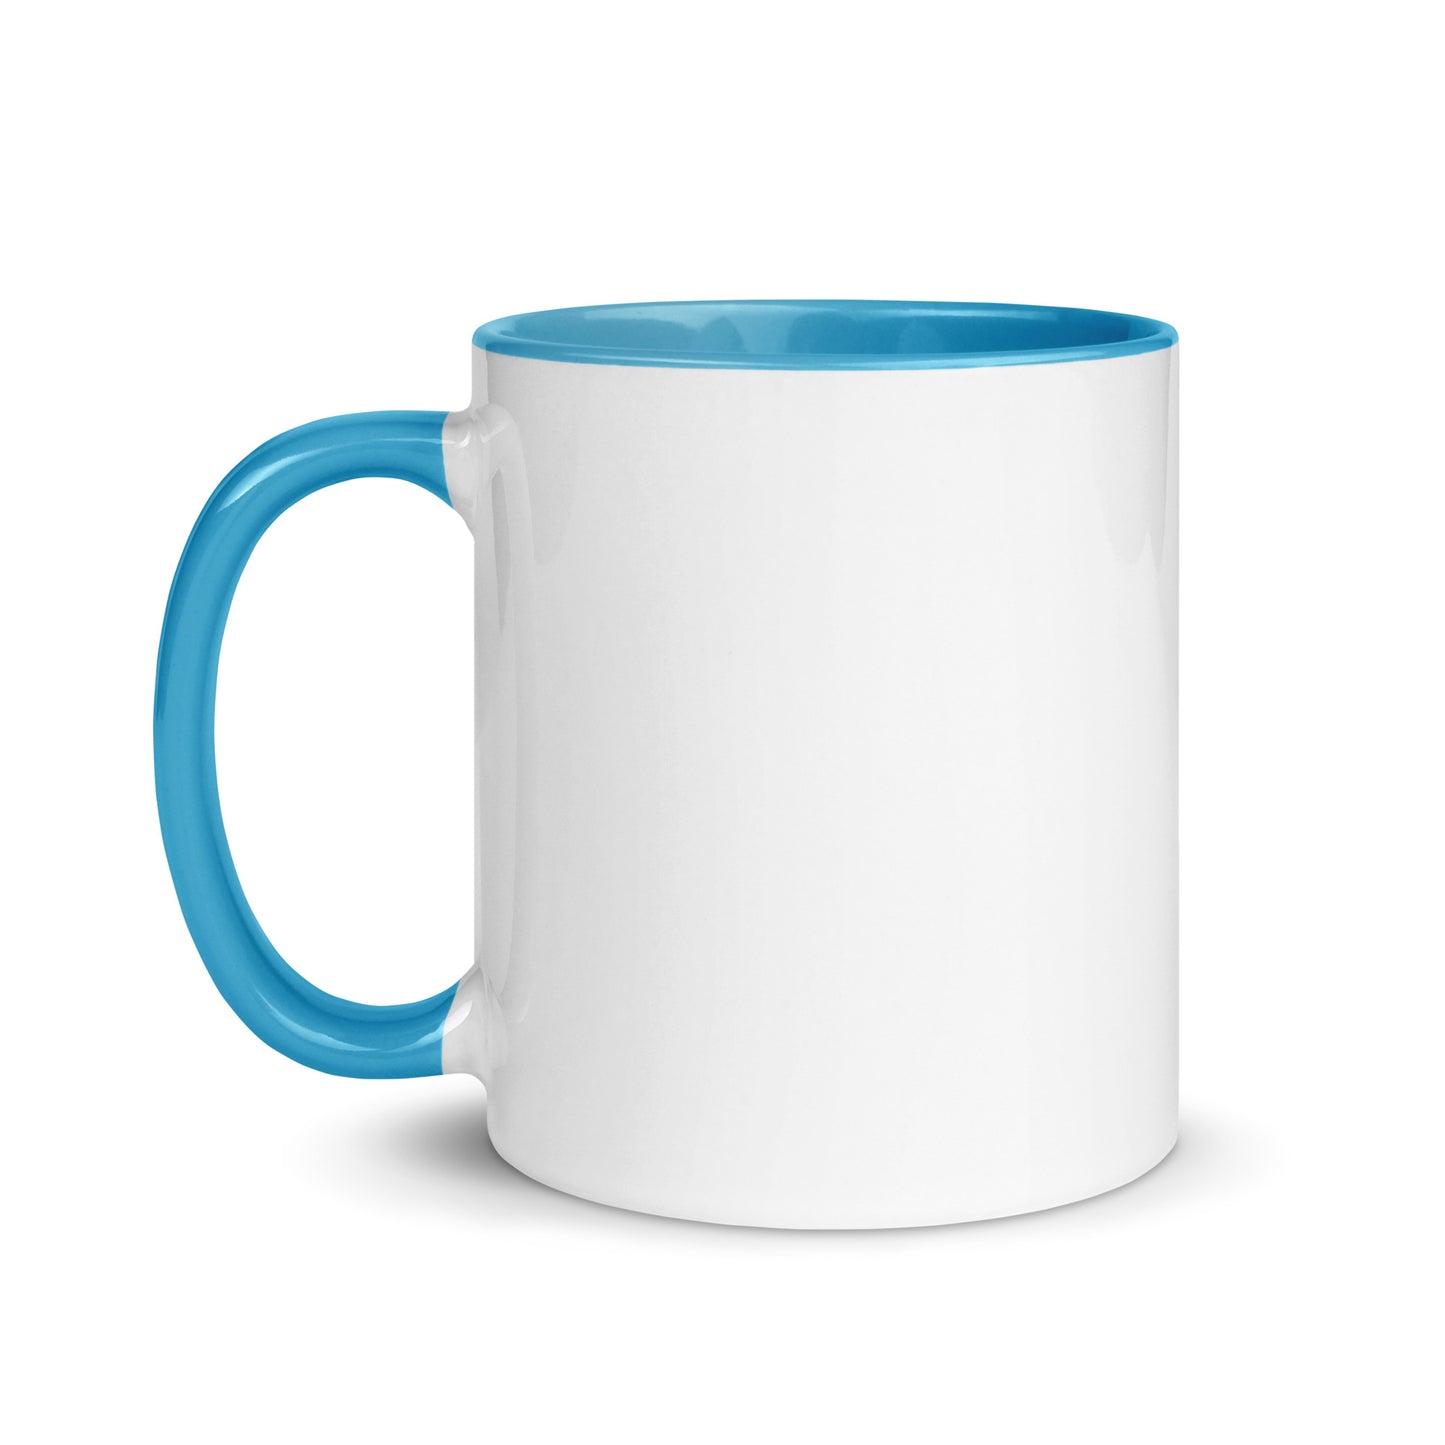 Papa Bear Logo - Ceramic Mug